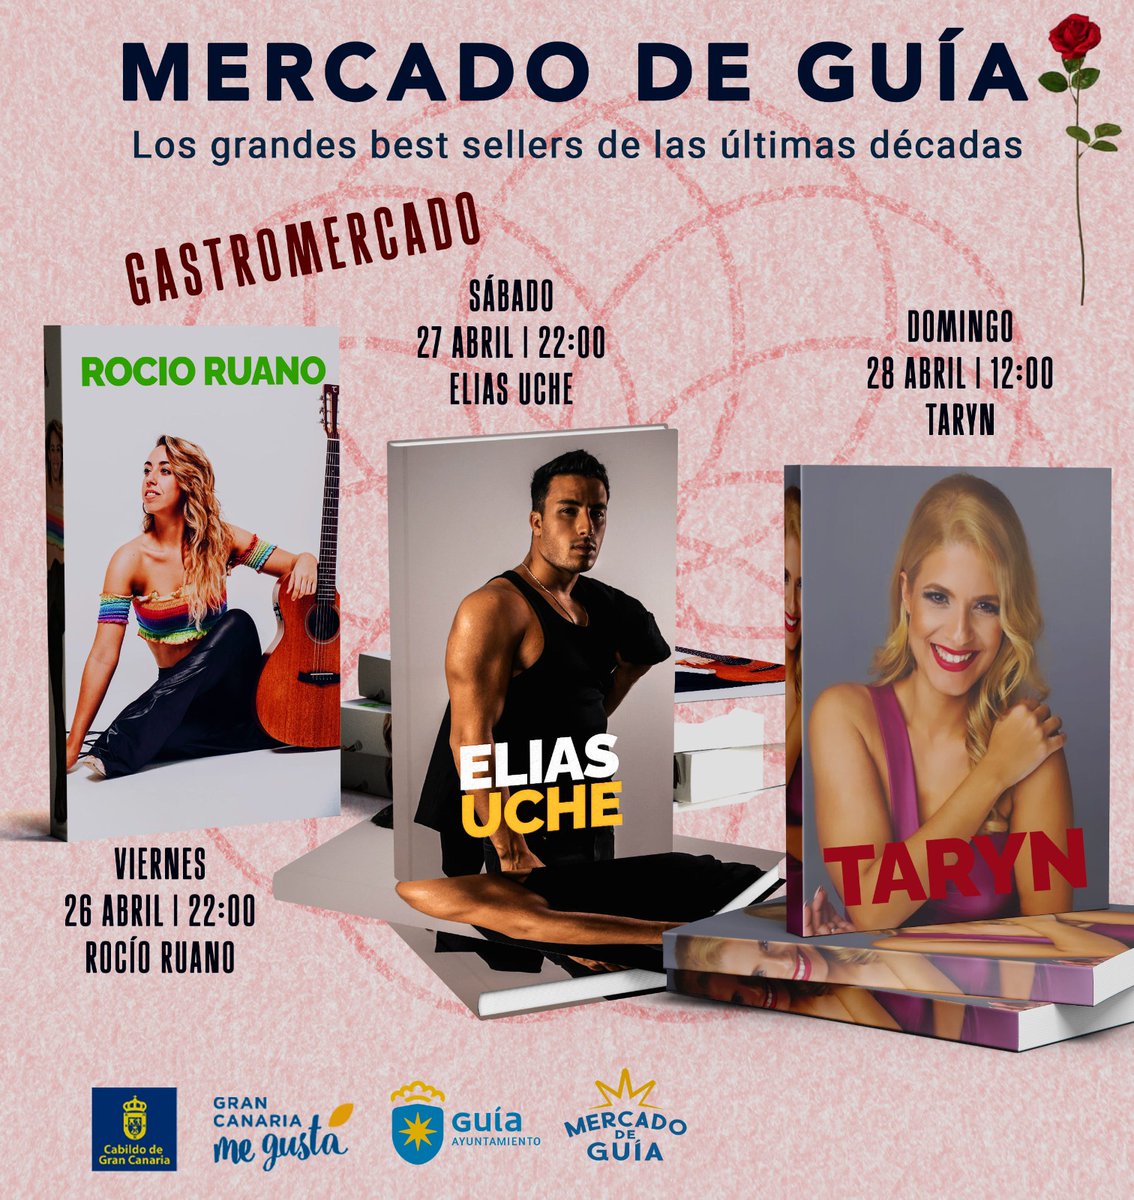 Ya tenemos cartel de actuaciones musicales para este fin de semana en nuestro #MercadoDeGuía ▪️ Rocío Ruano ▪️ Elias Uche ▪️ Taryn #SantaMaríadeGuía